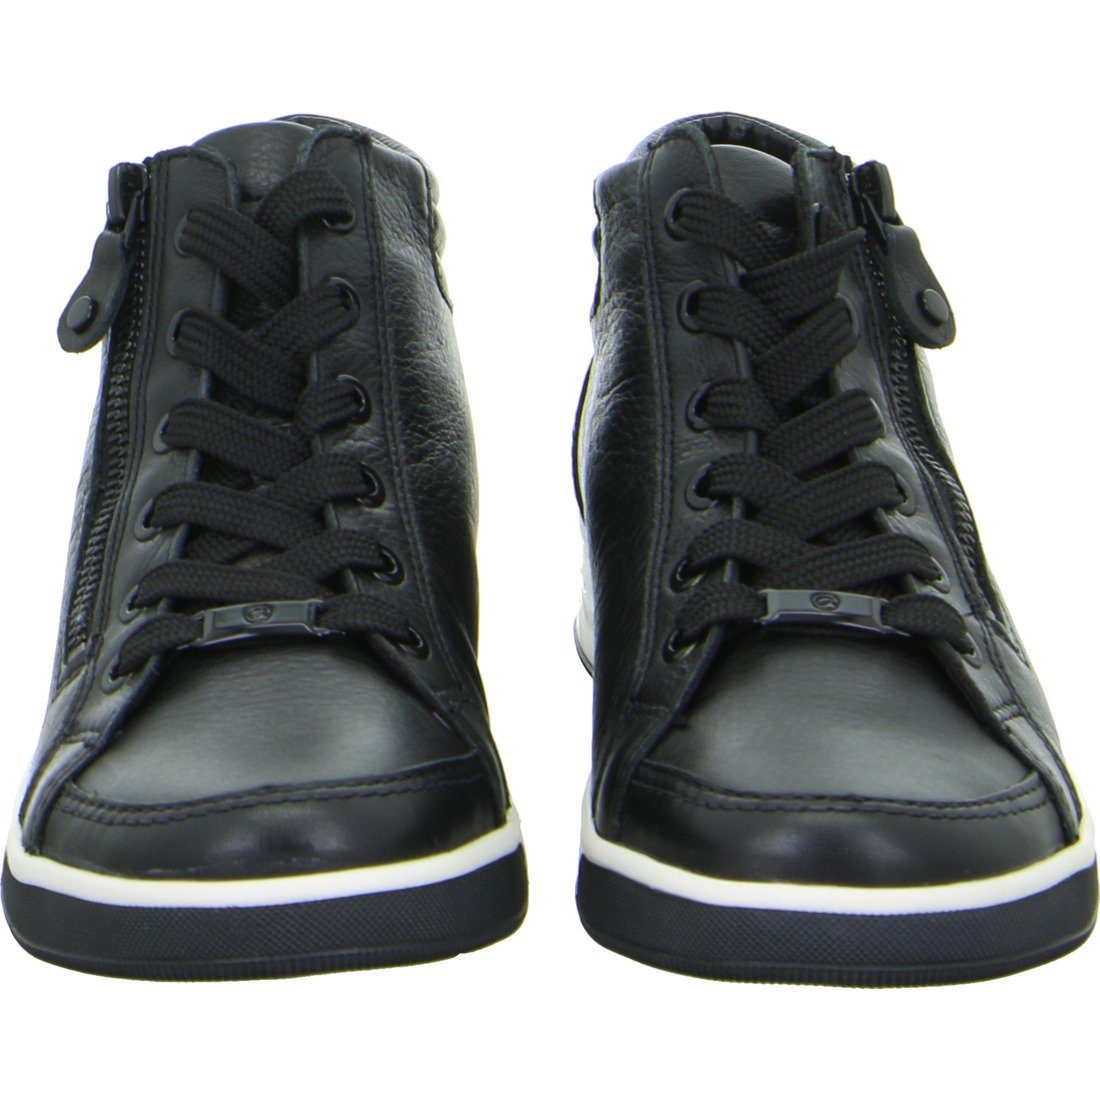 schwarz Nubuk Damen Ara Ara Sneaker - Sneaker Rom Schuhe, 049818